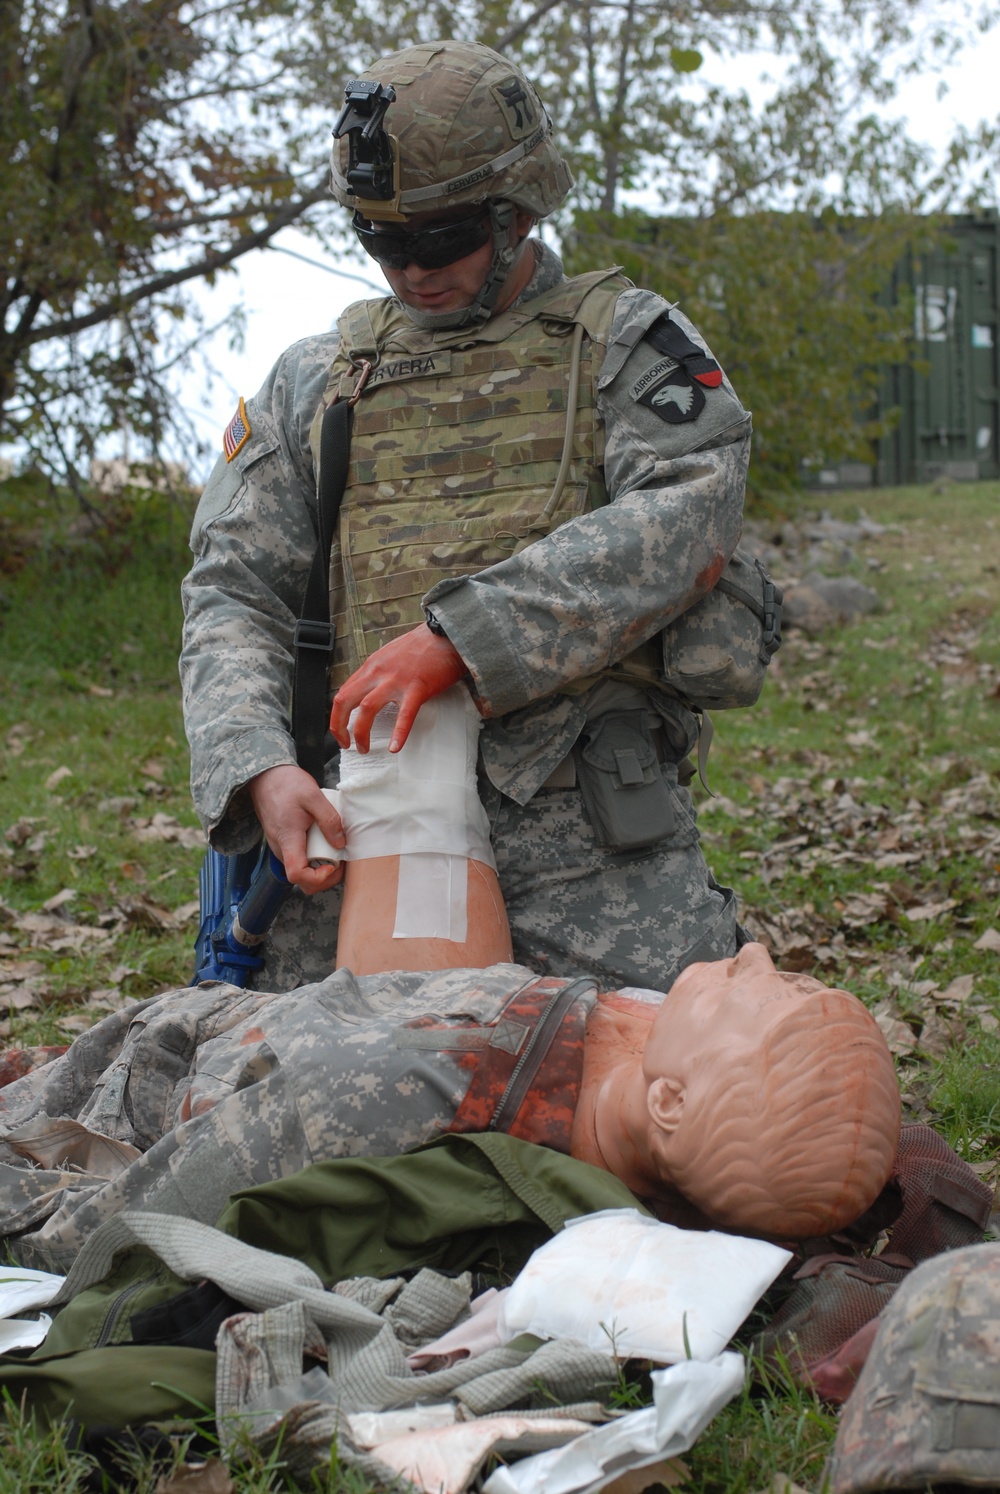 Combat medical training keeps Rakkasans ready